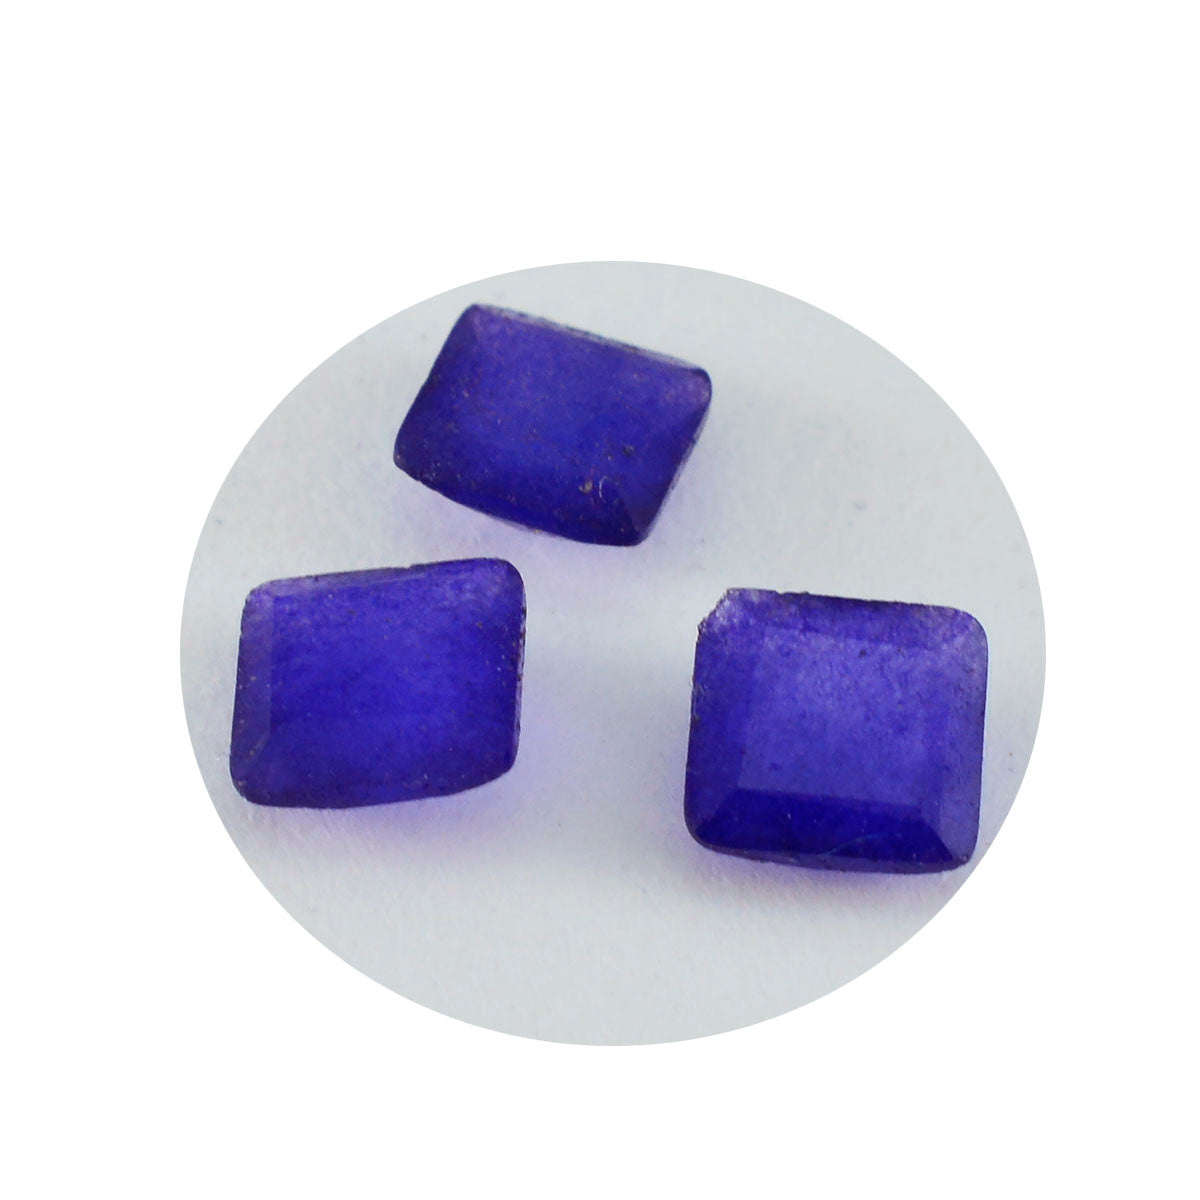 Riyogems 1PC natuurlijke blauwe jaspis gefacetteerd 10x10 mm vierkante vorm, mooie kwaliteitsedelstenen